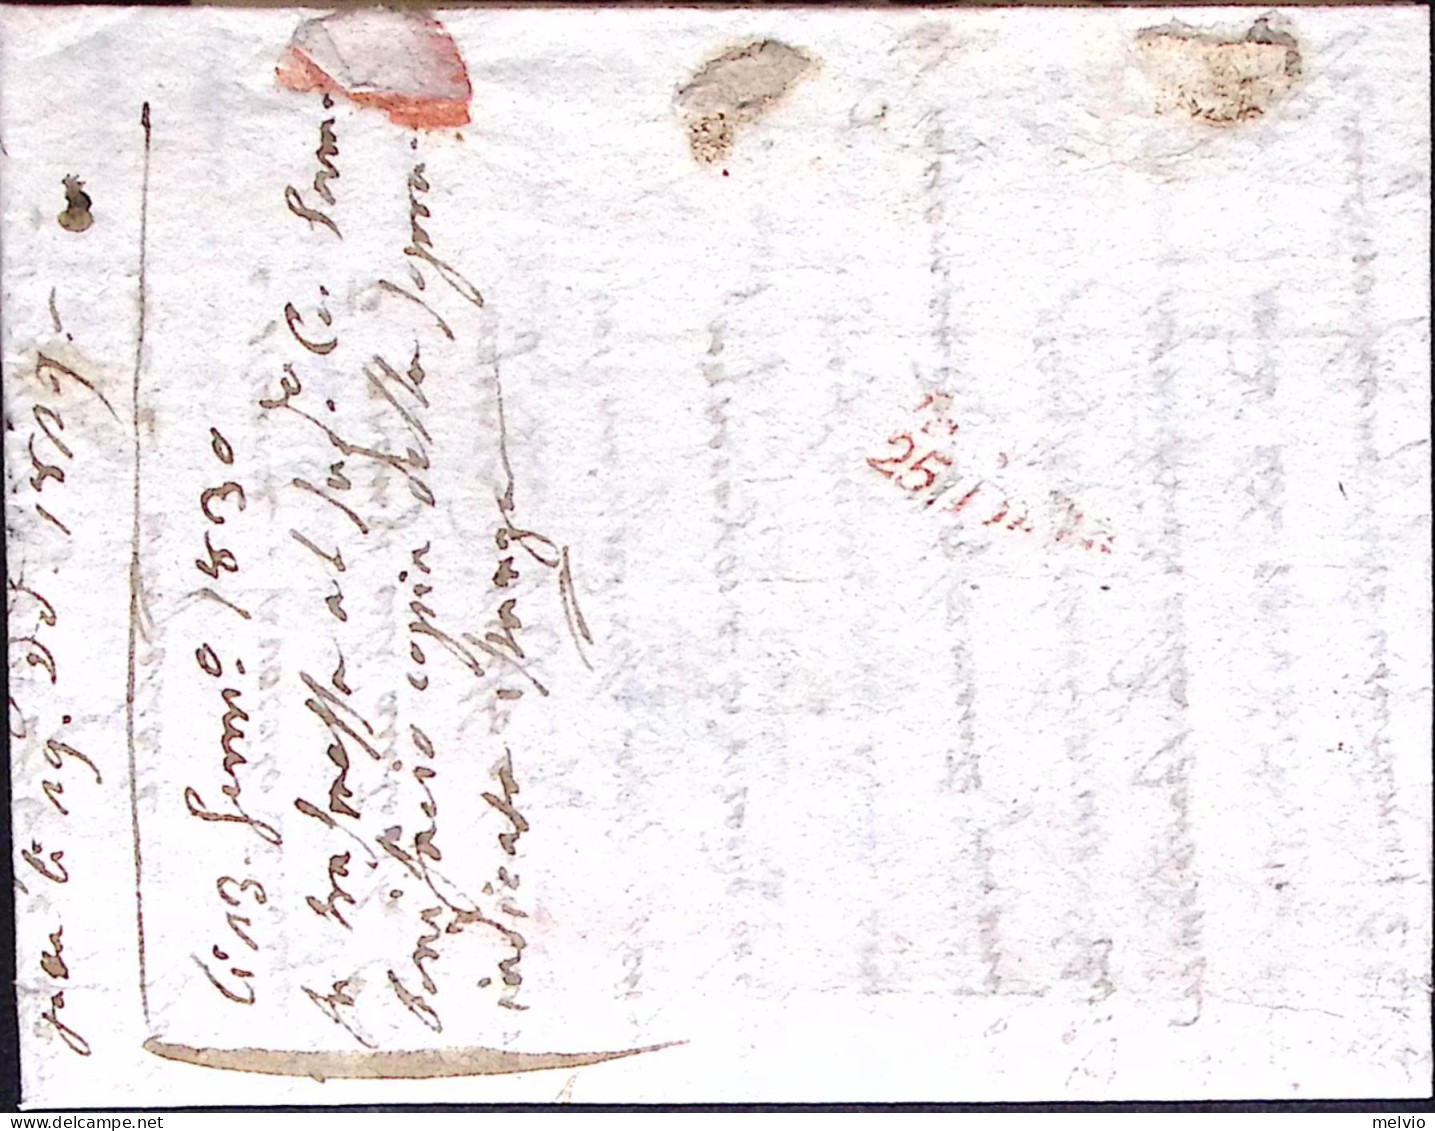 1829-PADOVA S.I. Su Lettera Completa Di Testo (22.10) Per Fermo Posta Verona - 1. ...-1850 Prephilately